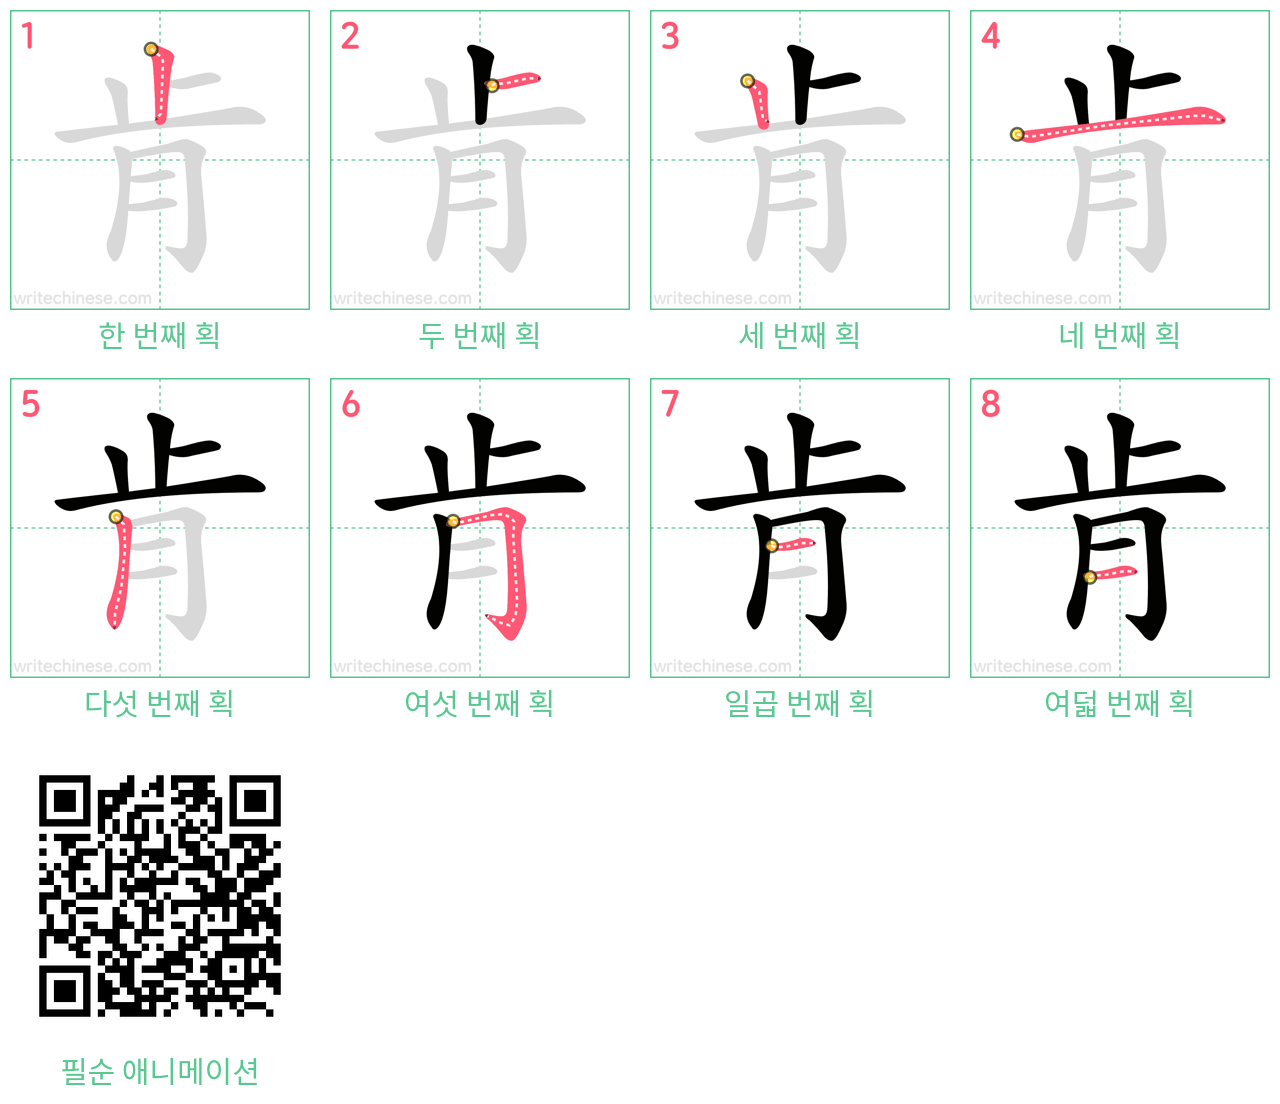 肯 step-by-step stroke order diagrams